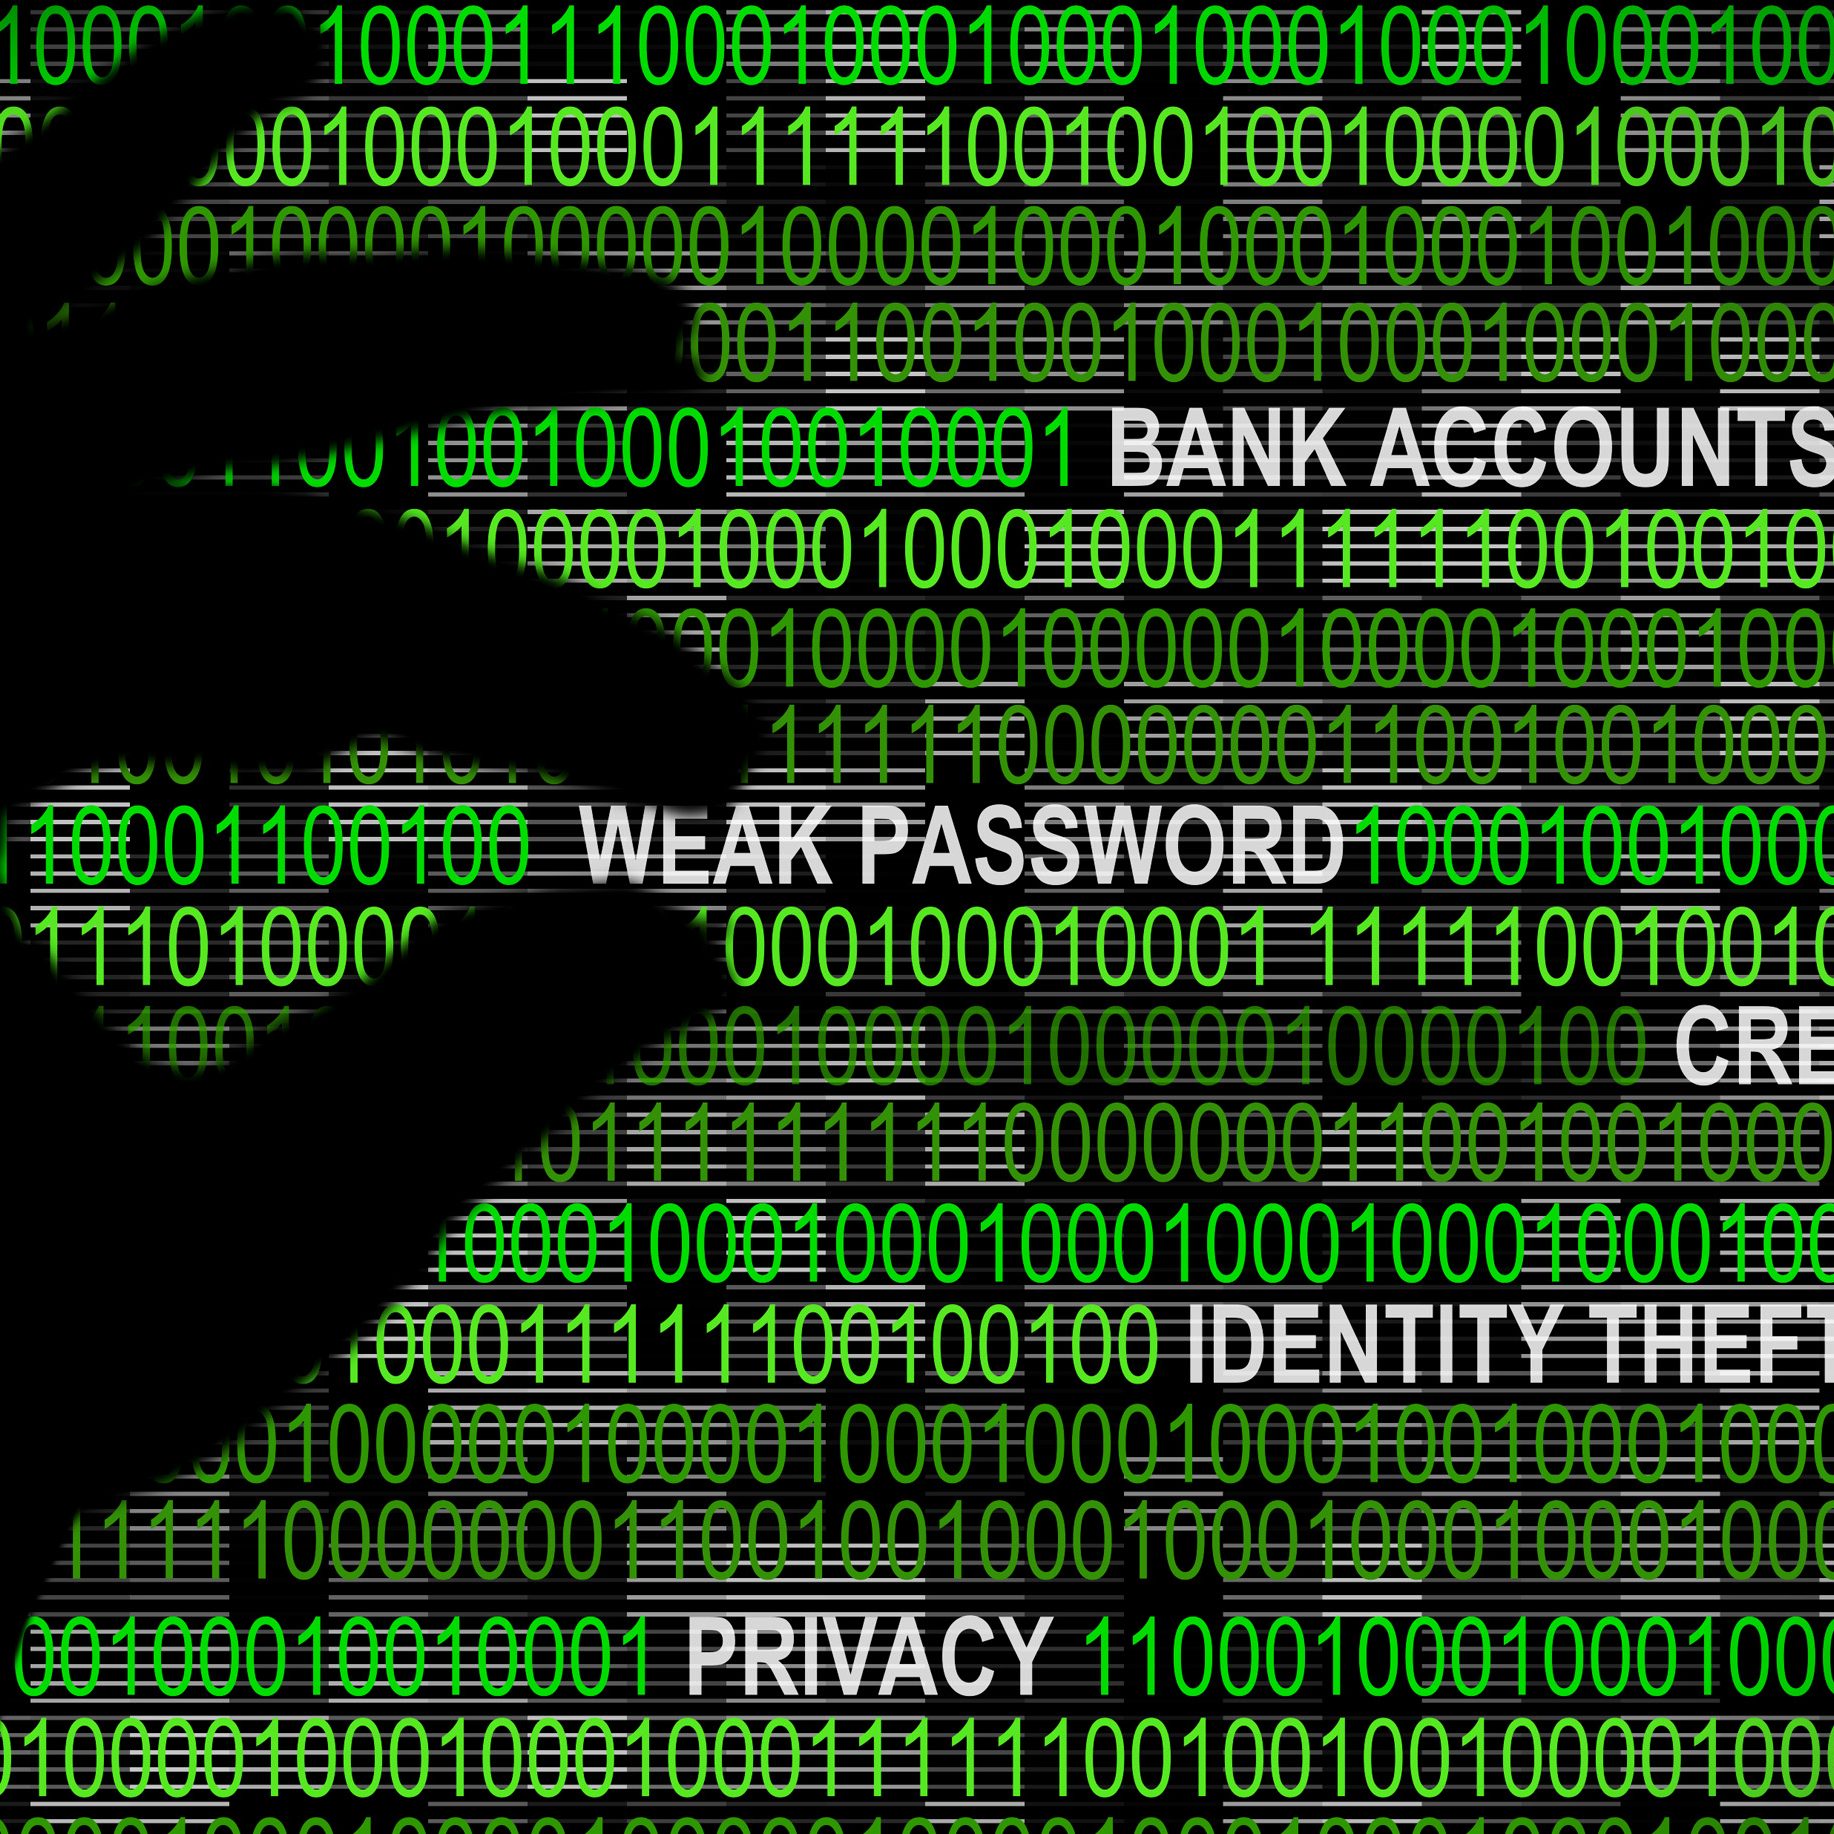 Cybersecurity - Weak Password Concept